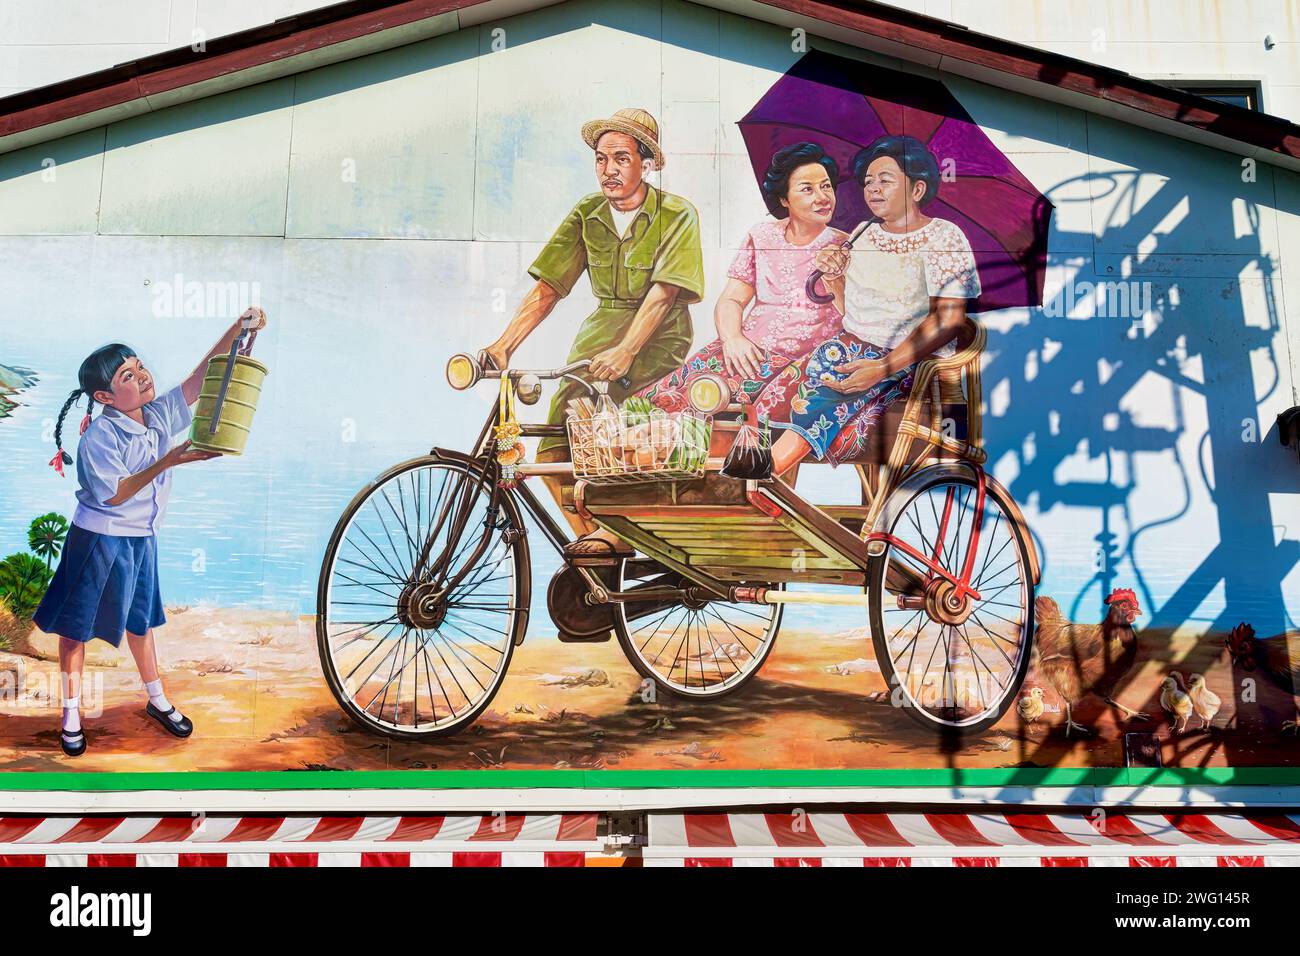 Une murale dans la ville de Phuket, Phuket, Thaïlande, représentant un conducteur de trishaw vieux avec deux passagers féminins et une jeune fille avec une boîte à tiffin (boîte à lunch) Banque D'Images